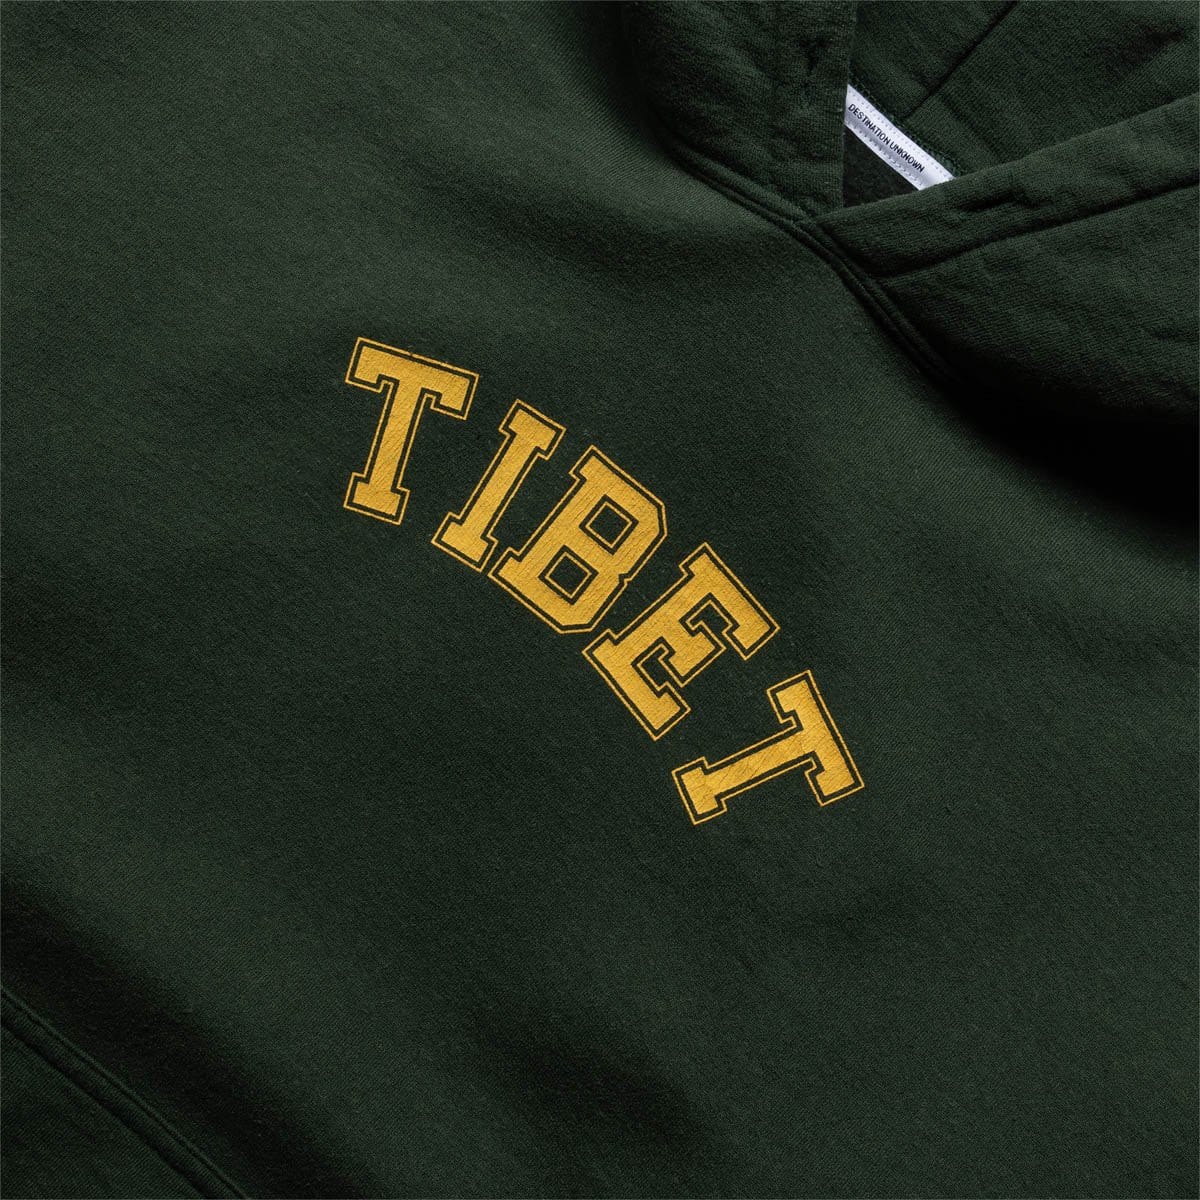 Liberaiders Hoodies & Sweatshirts TIBET PULLOVER HOODIE